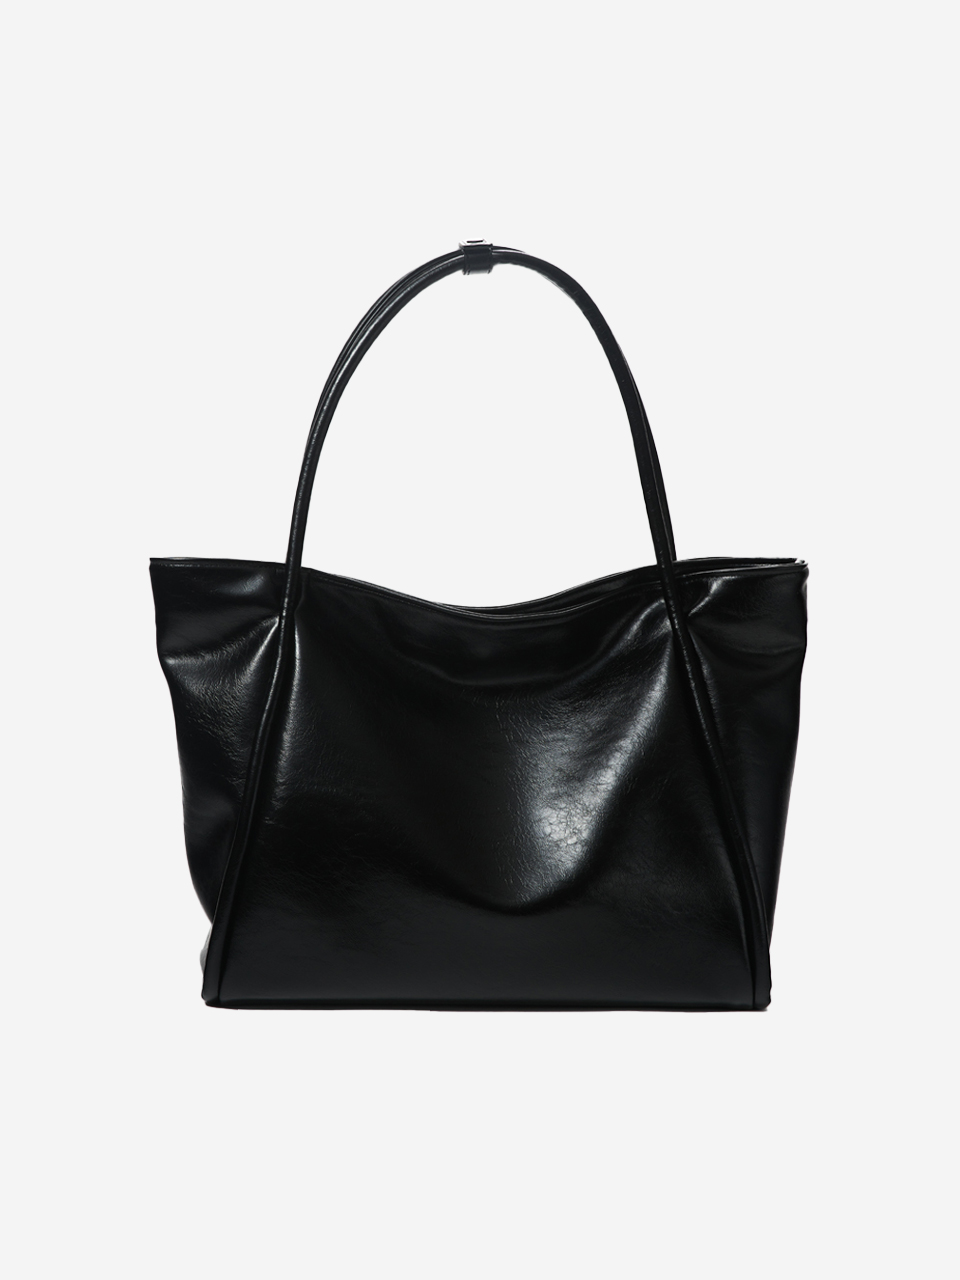 3/22 예약배송 [10차 재입고] medium dapper bag (crinkle black)